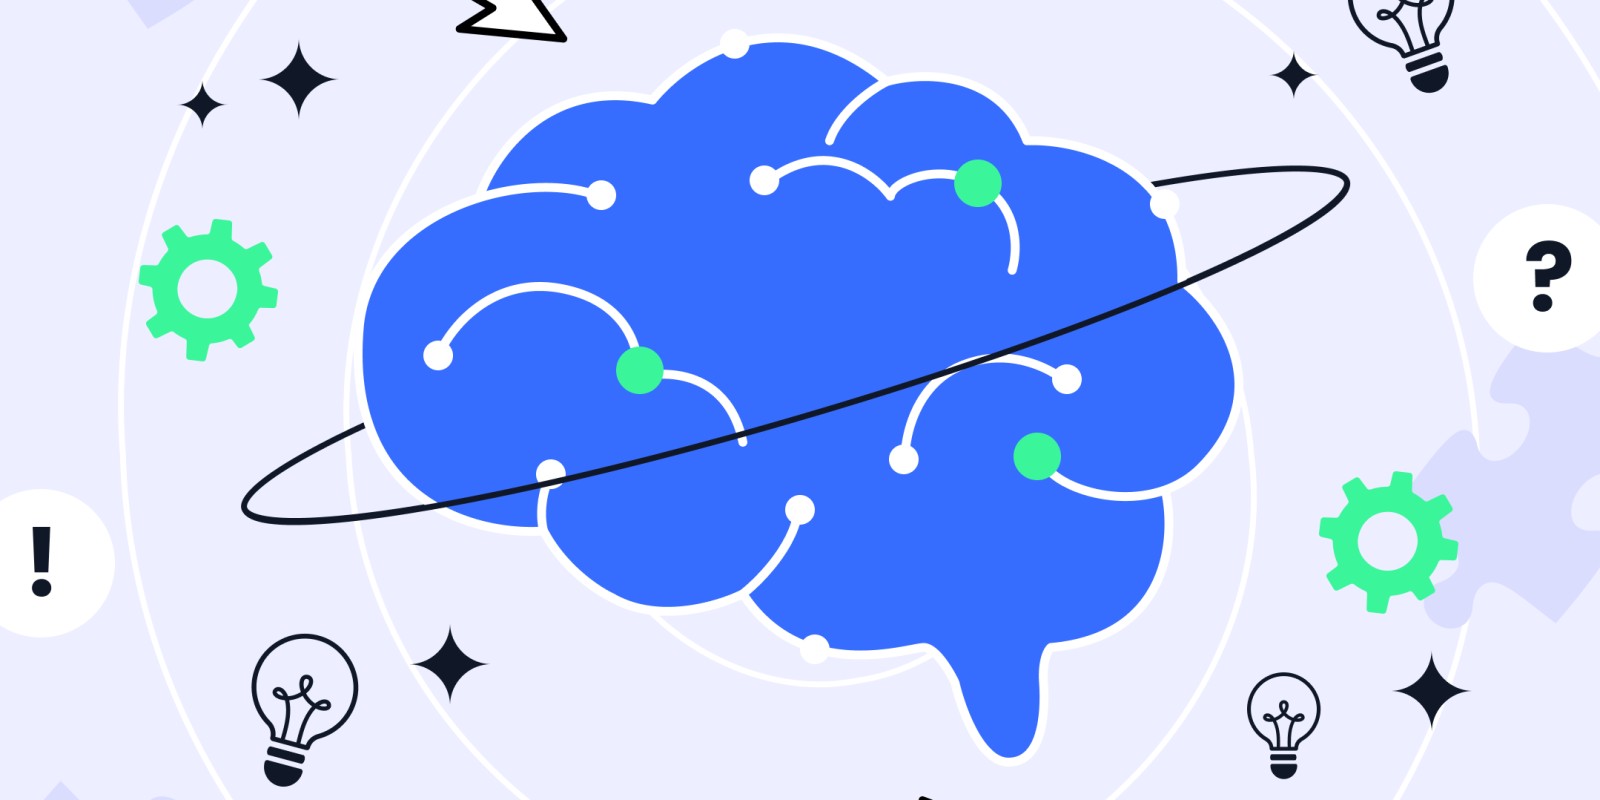 Jak pisać neuroinkluzywnie? Eksperyment - artykuł napisany przez Chat GPT.